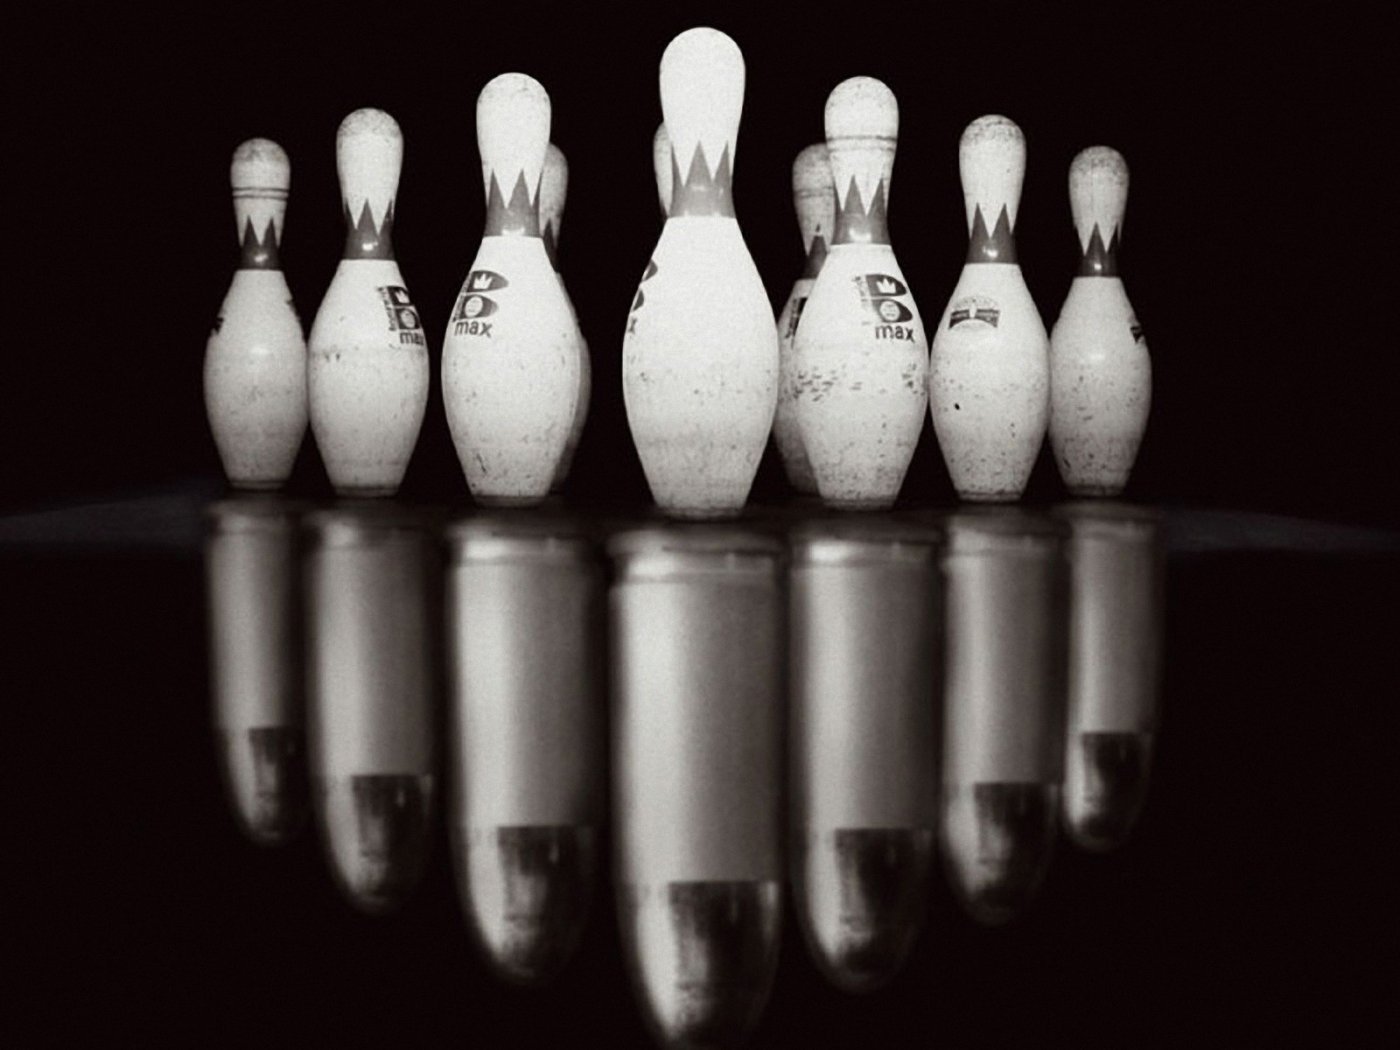 fond d'écran de bowling,bowling,équipement de bowling,dix quilles de bowling,photographie de nature morte,sport de quilles